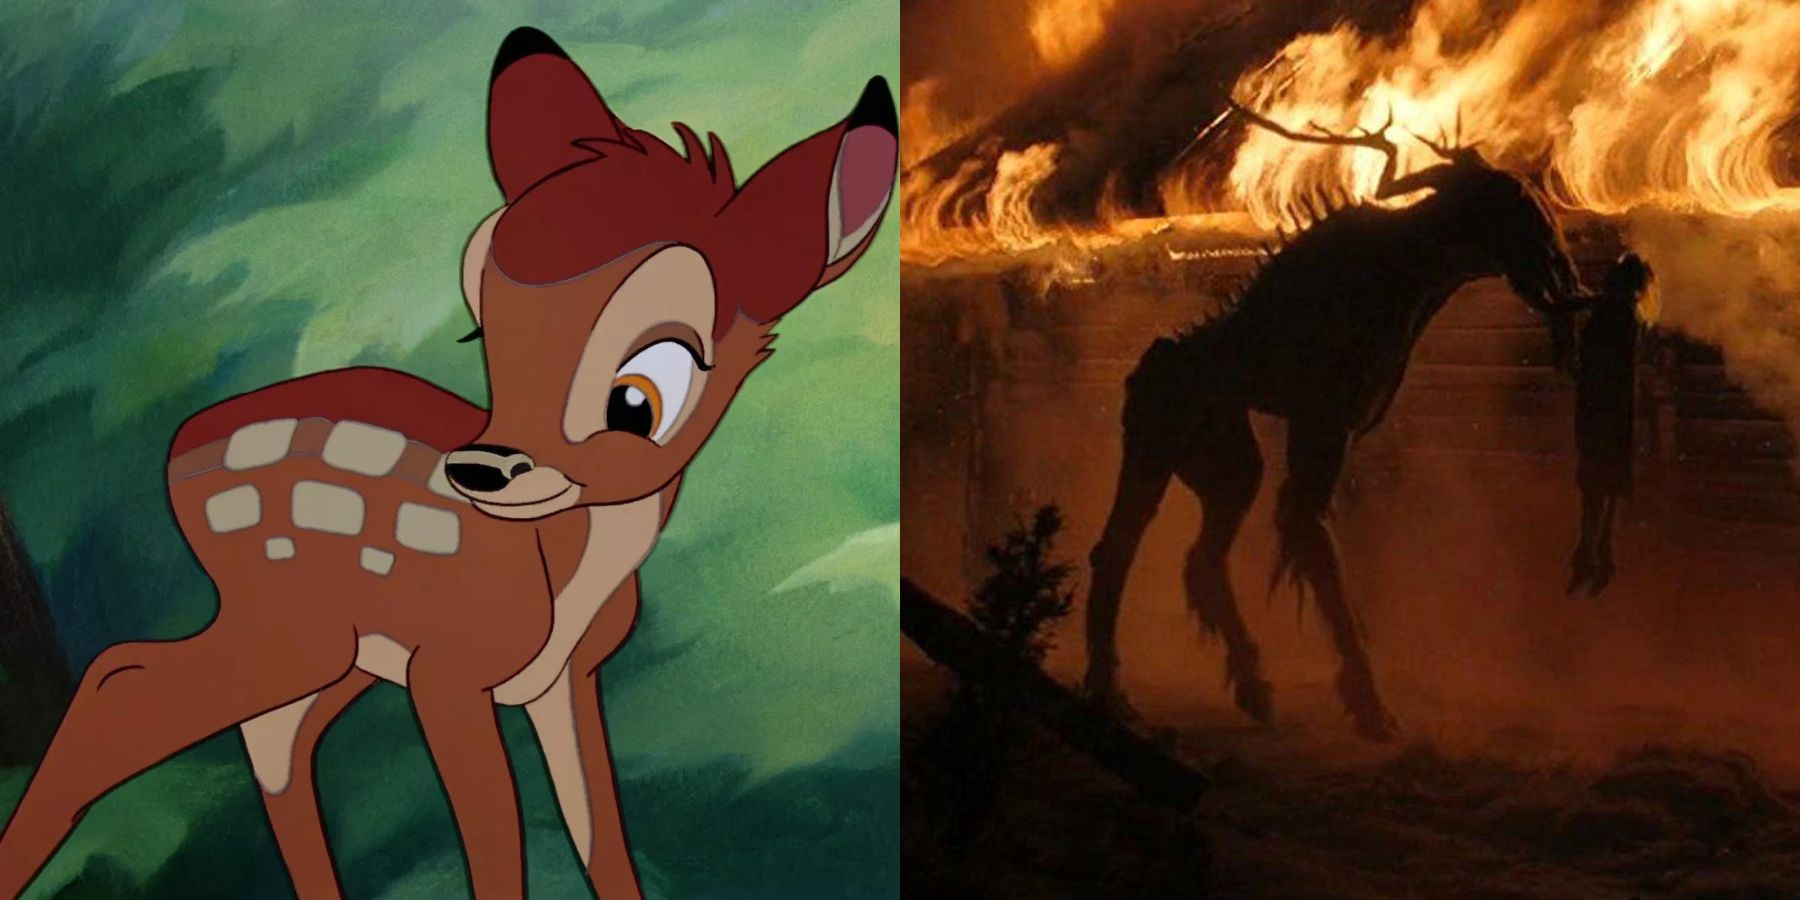 bambi uses the ritual as visual inspiration